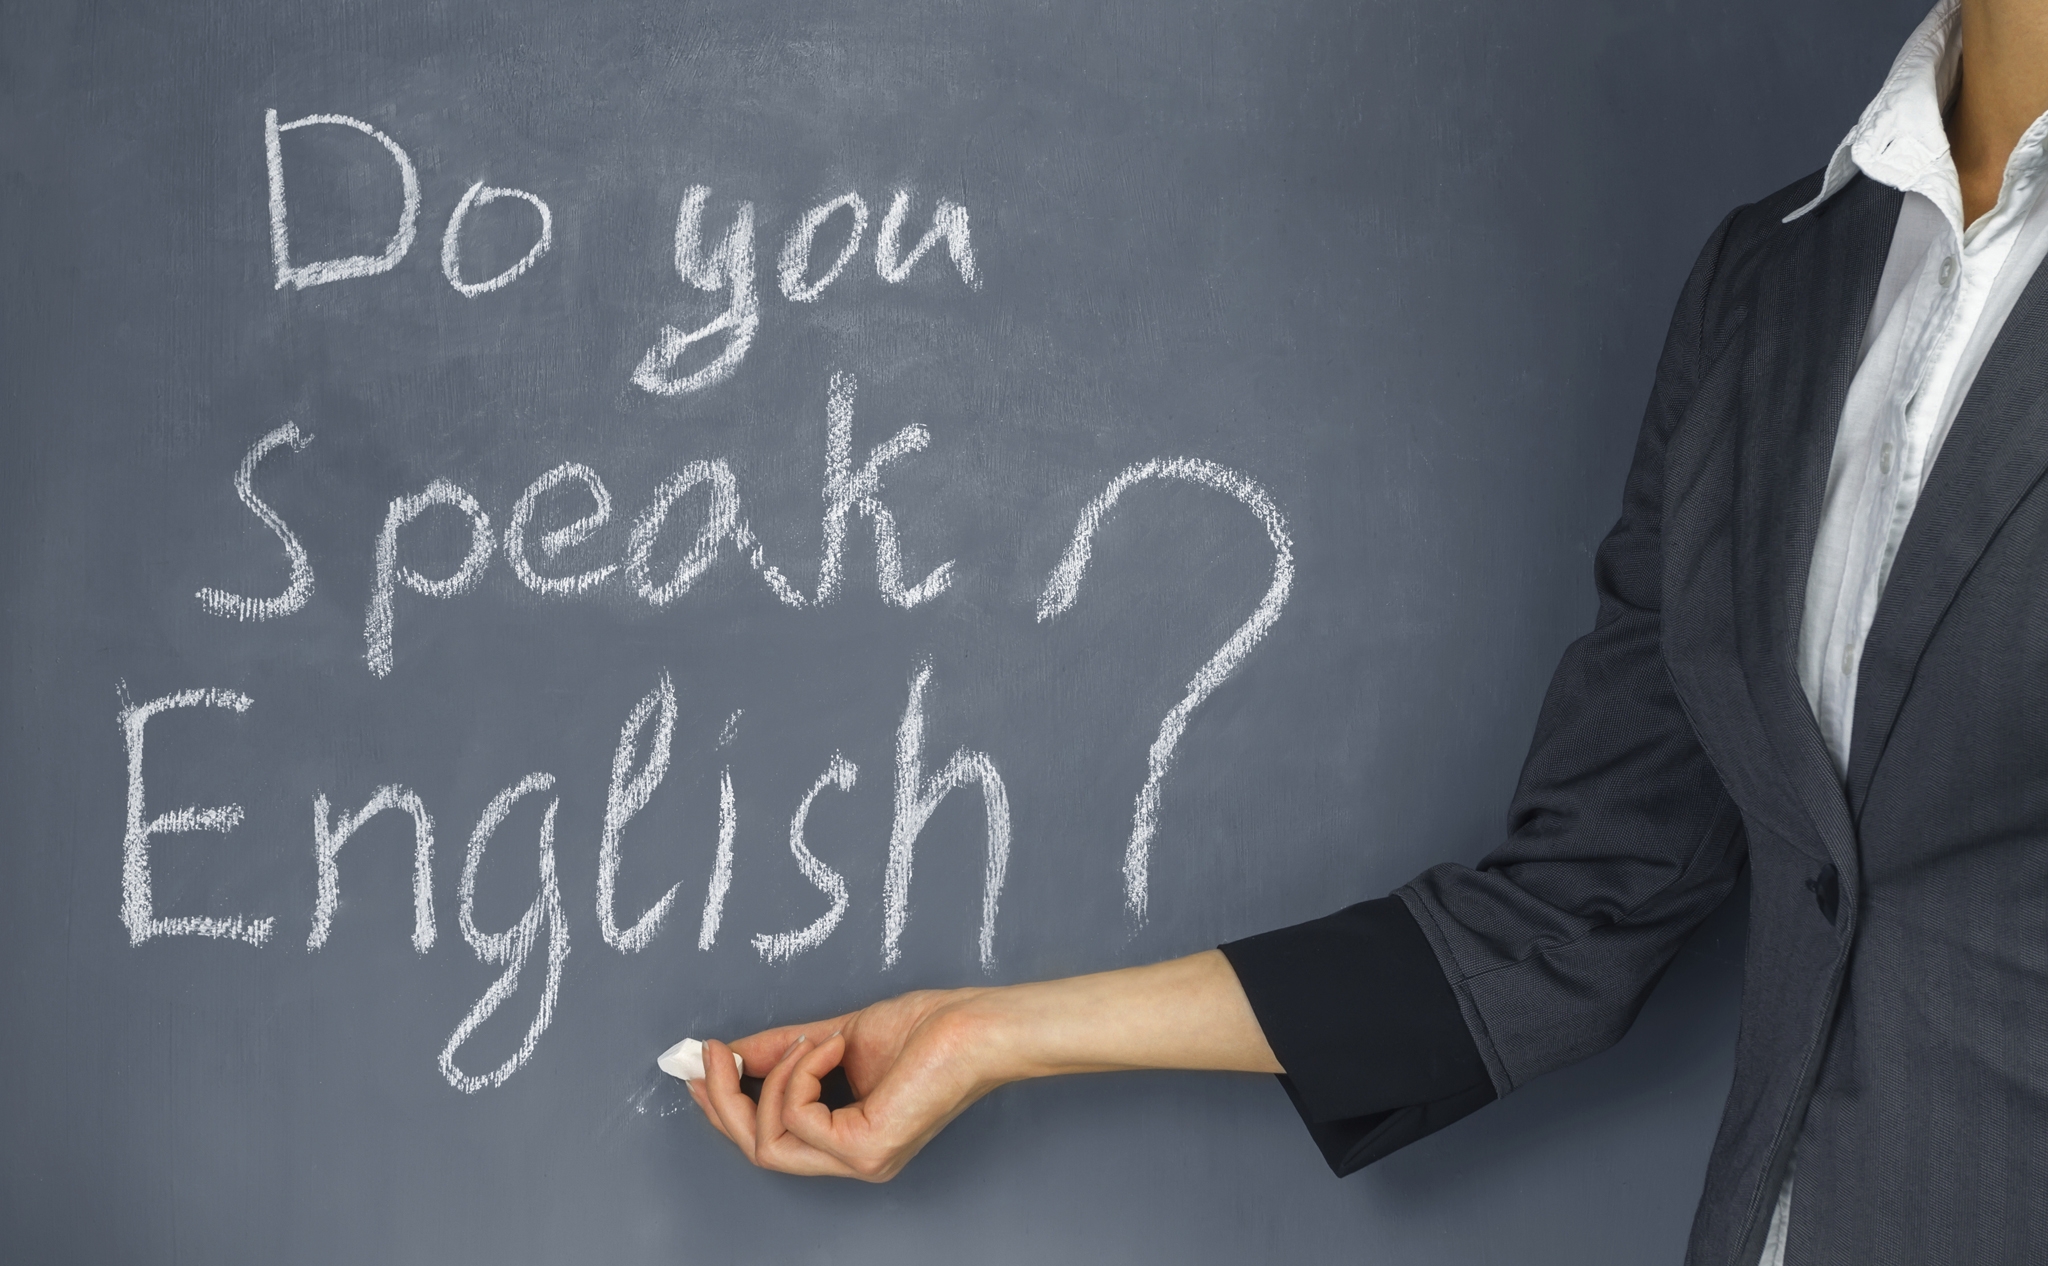 English is spoken all over the. Преподаватель иностранного языка. Учитель английского языка. Учитель иностранного языка. Учитель англ.